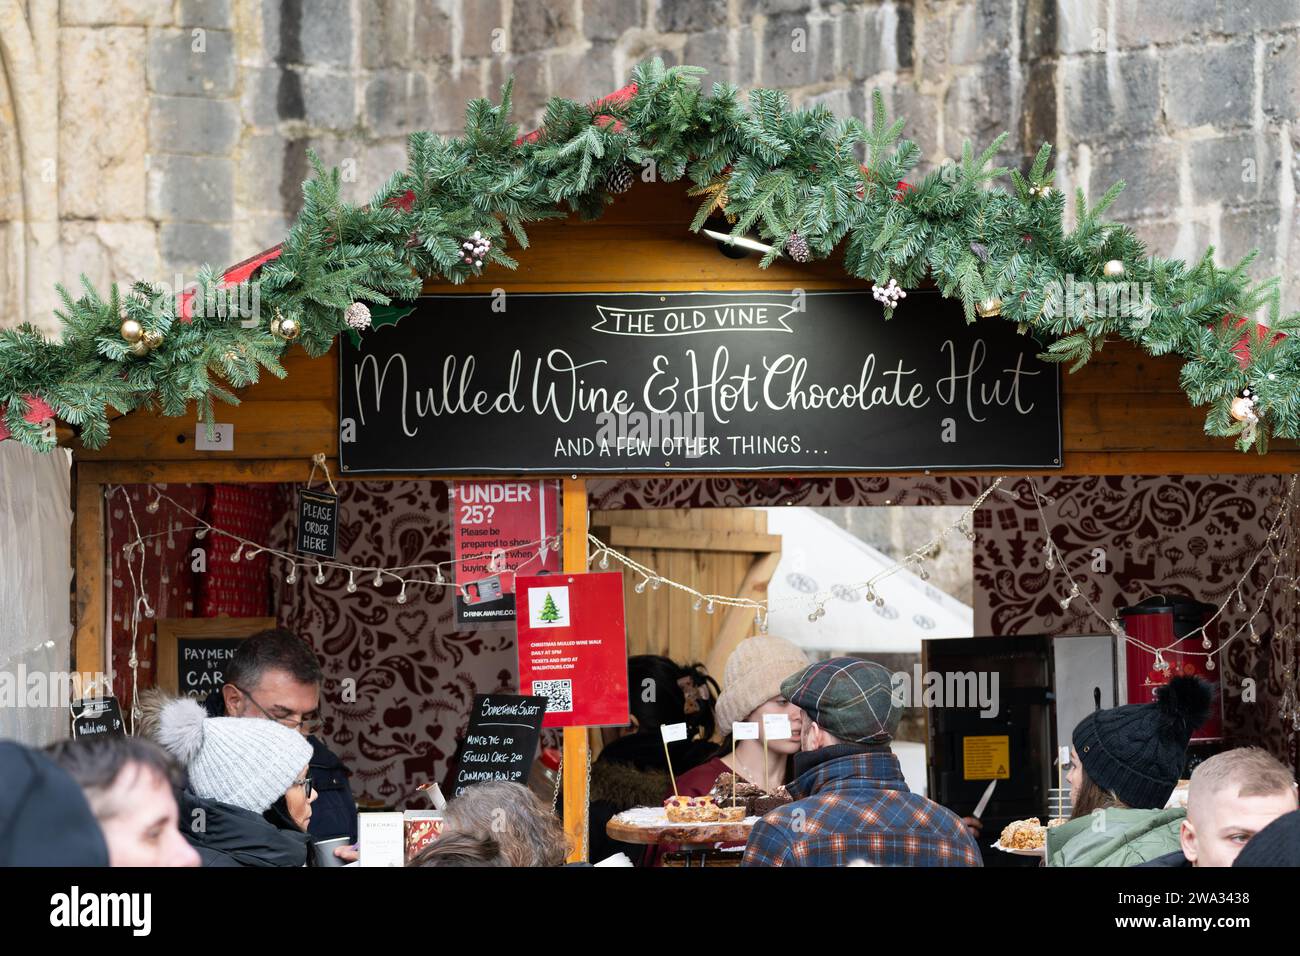 Les clients assoiffés font la queue pour du vin chaud et du chocolat chaud à la cabane à vin chaud « The Old Vine » au marché de Noël de la cathédrale de Winchester. Angleterre Banque D'Images